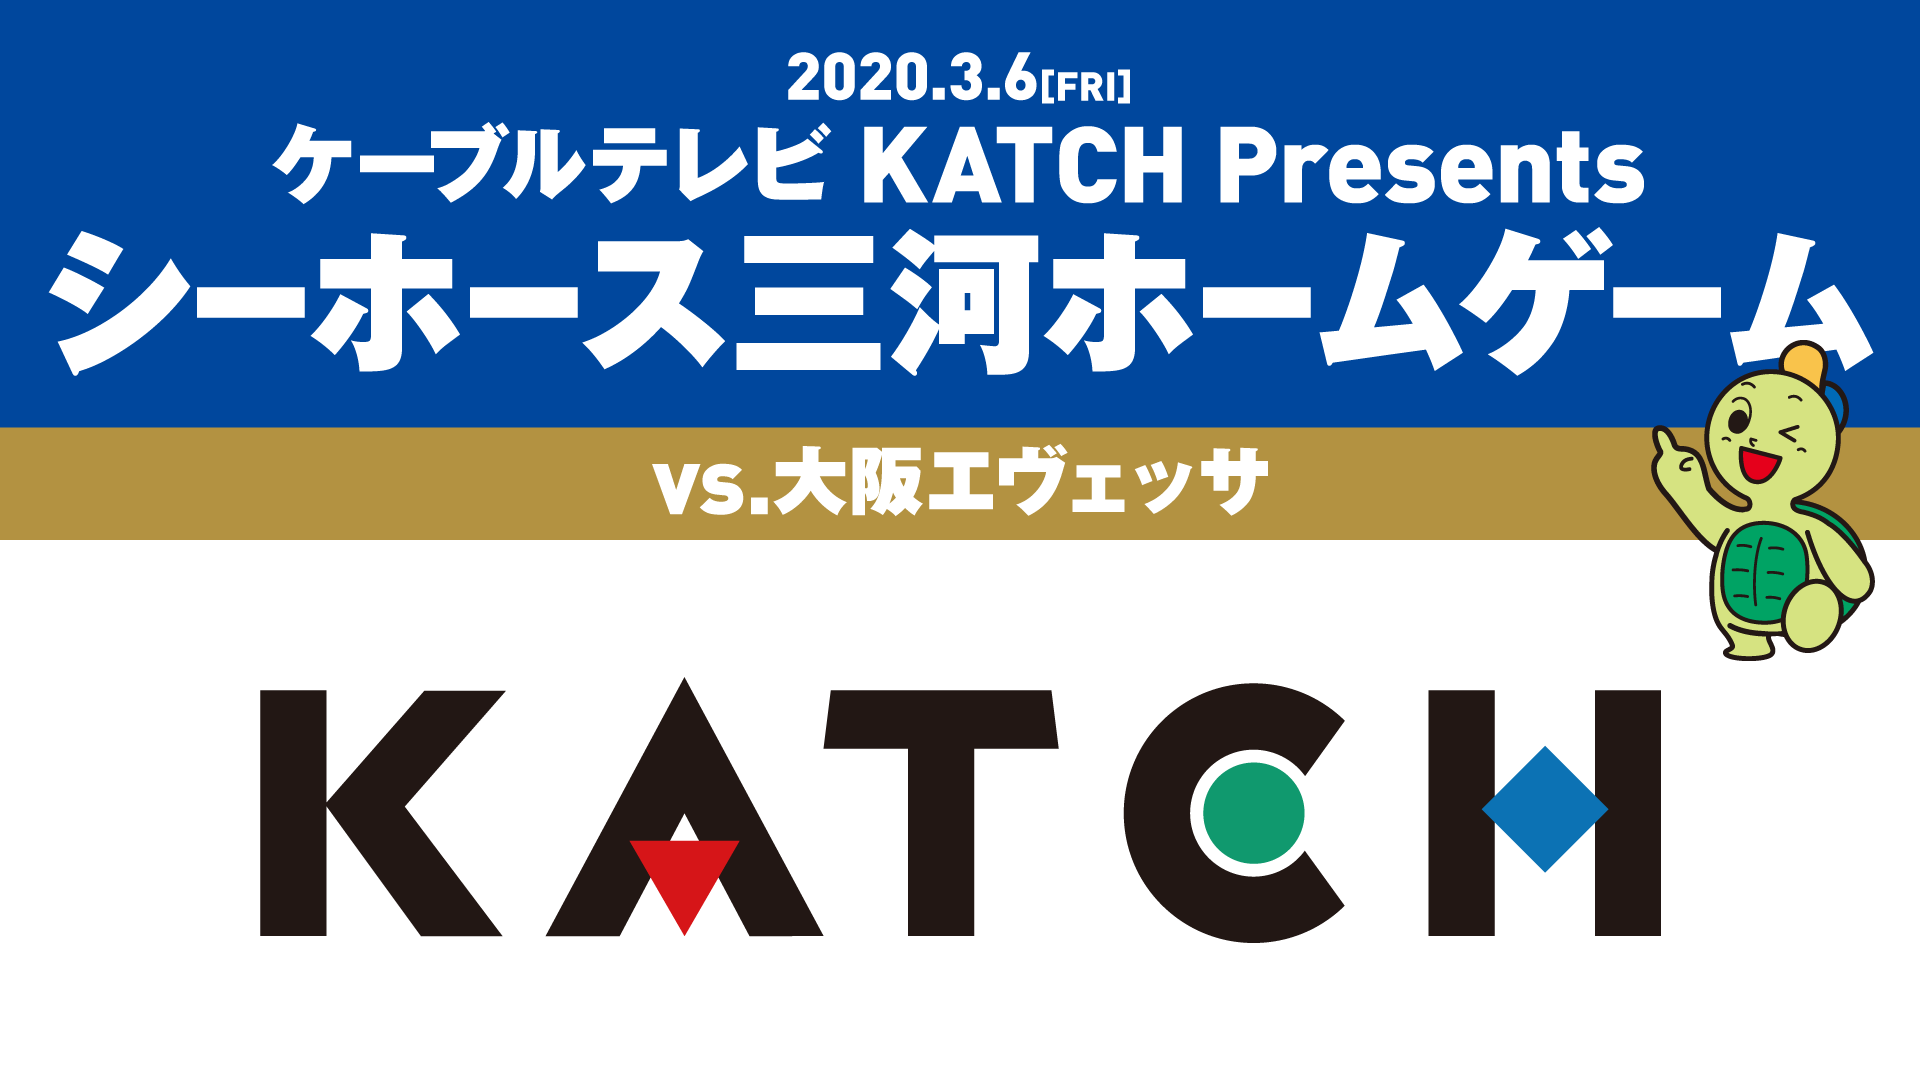 ケーブルテレビ KATCH Presents シーホース三河ホームゲーム